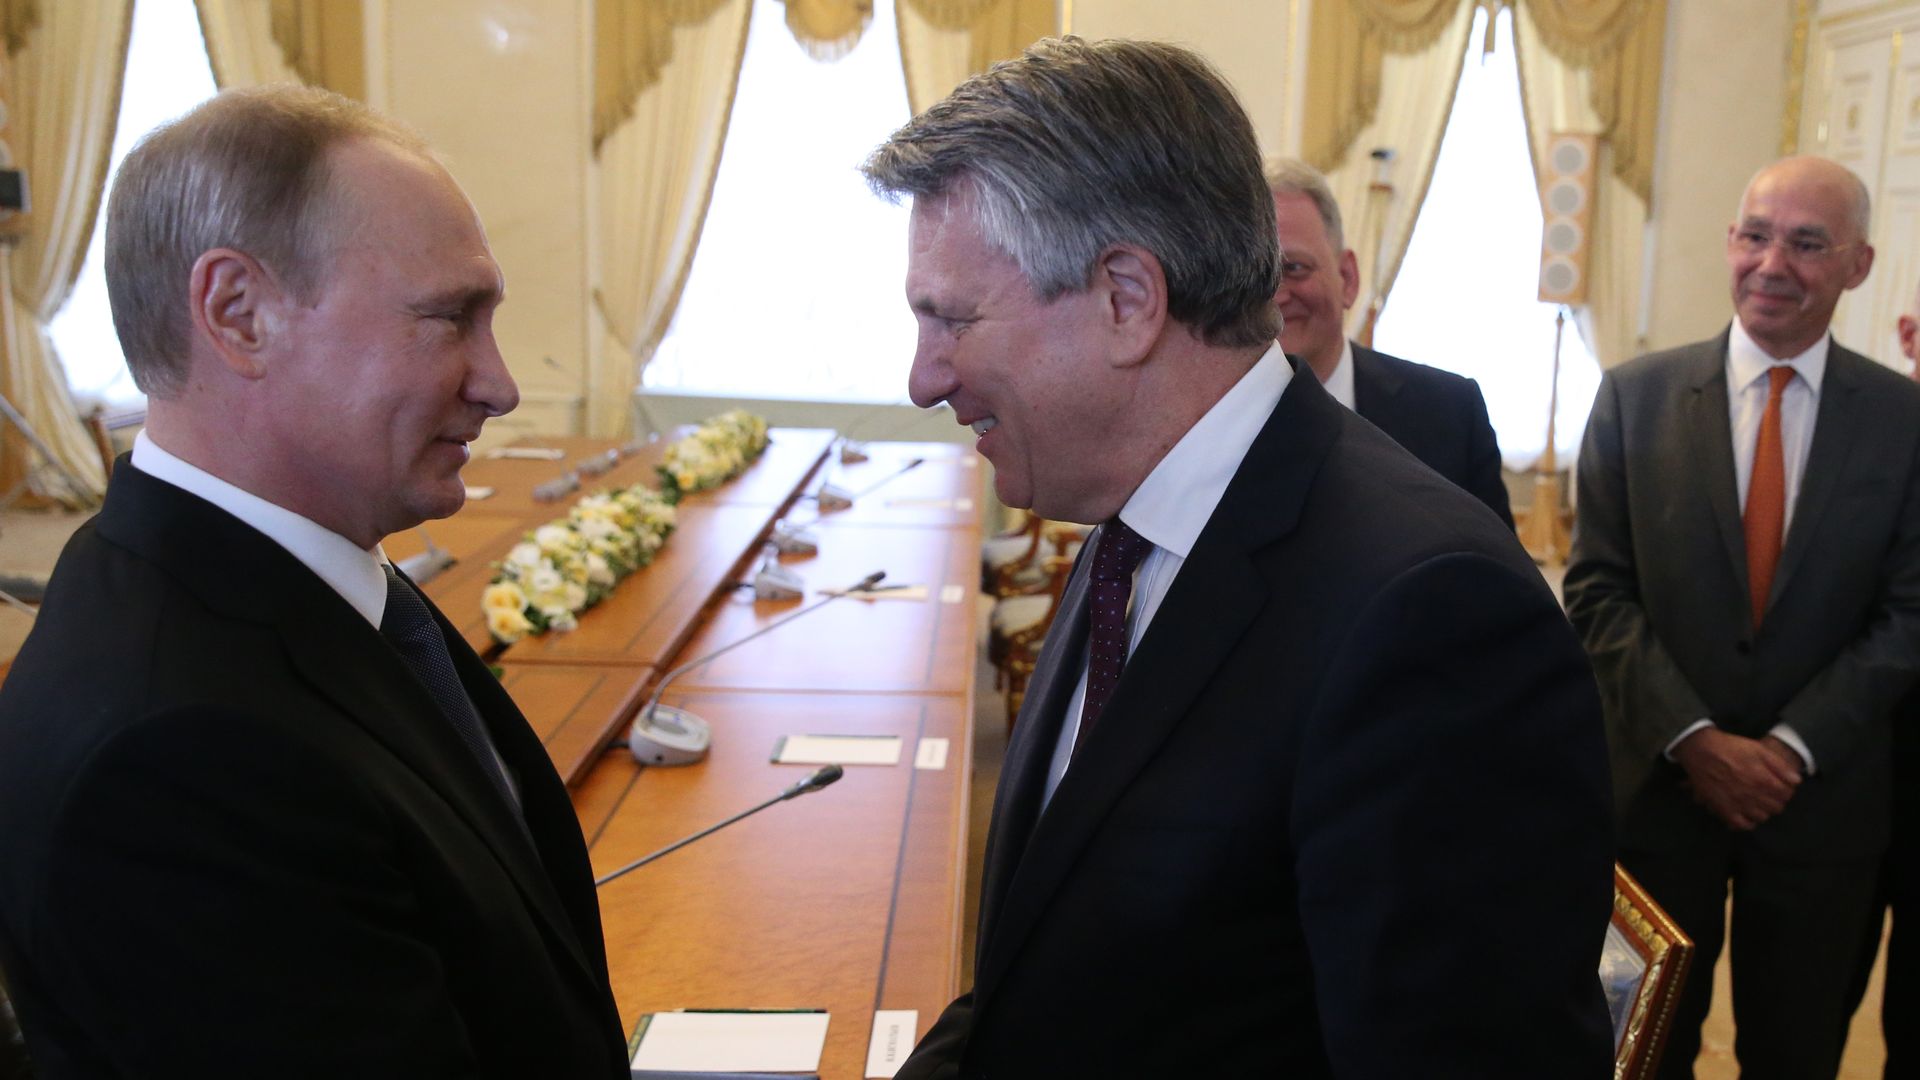 Russian President Vladimir Putin during the meeting with Shell CEO Ben van Beurden in Saint Petersburg, Russia, in 2016.